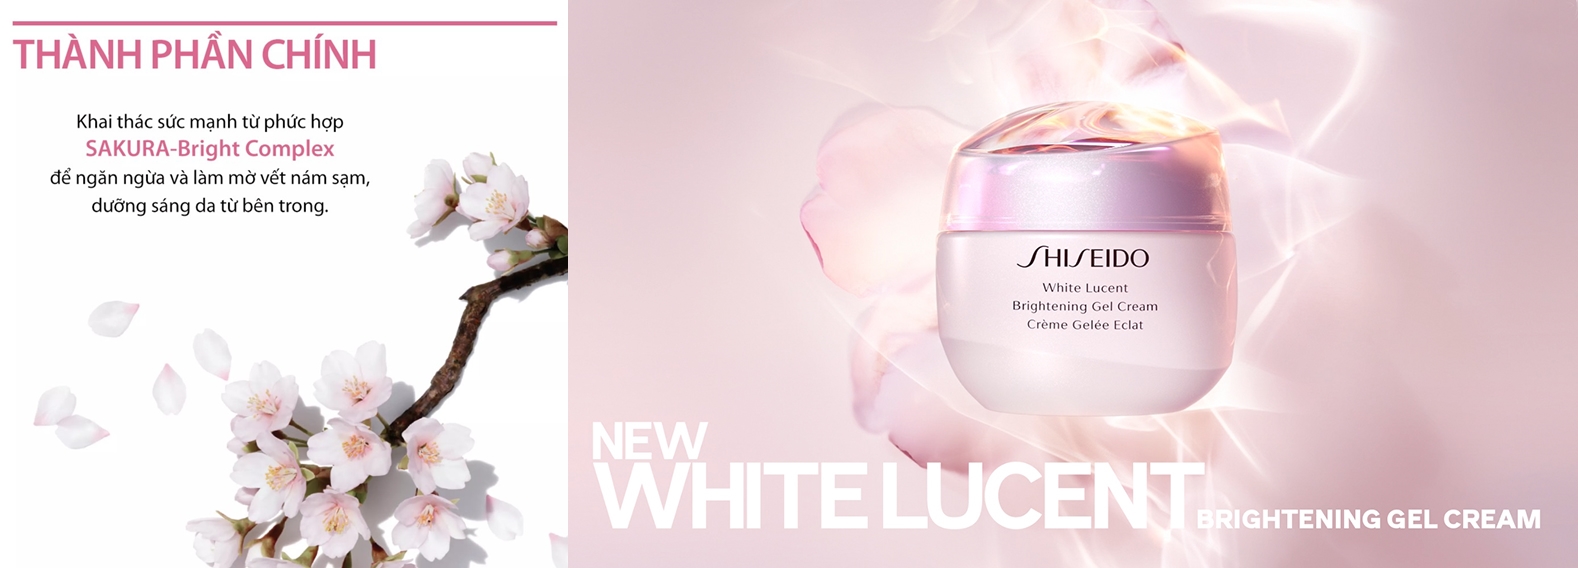 Các thành phần chính trong Shiseido White Lucent Brightening Gel Cream